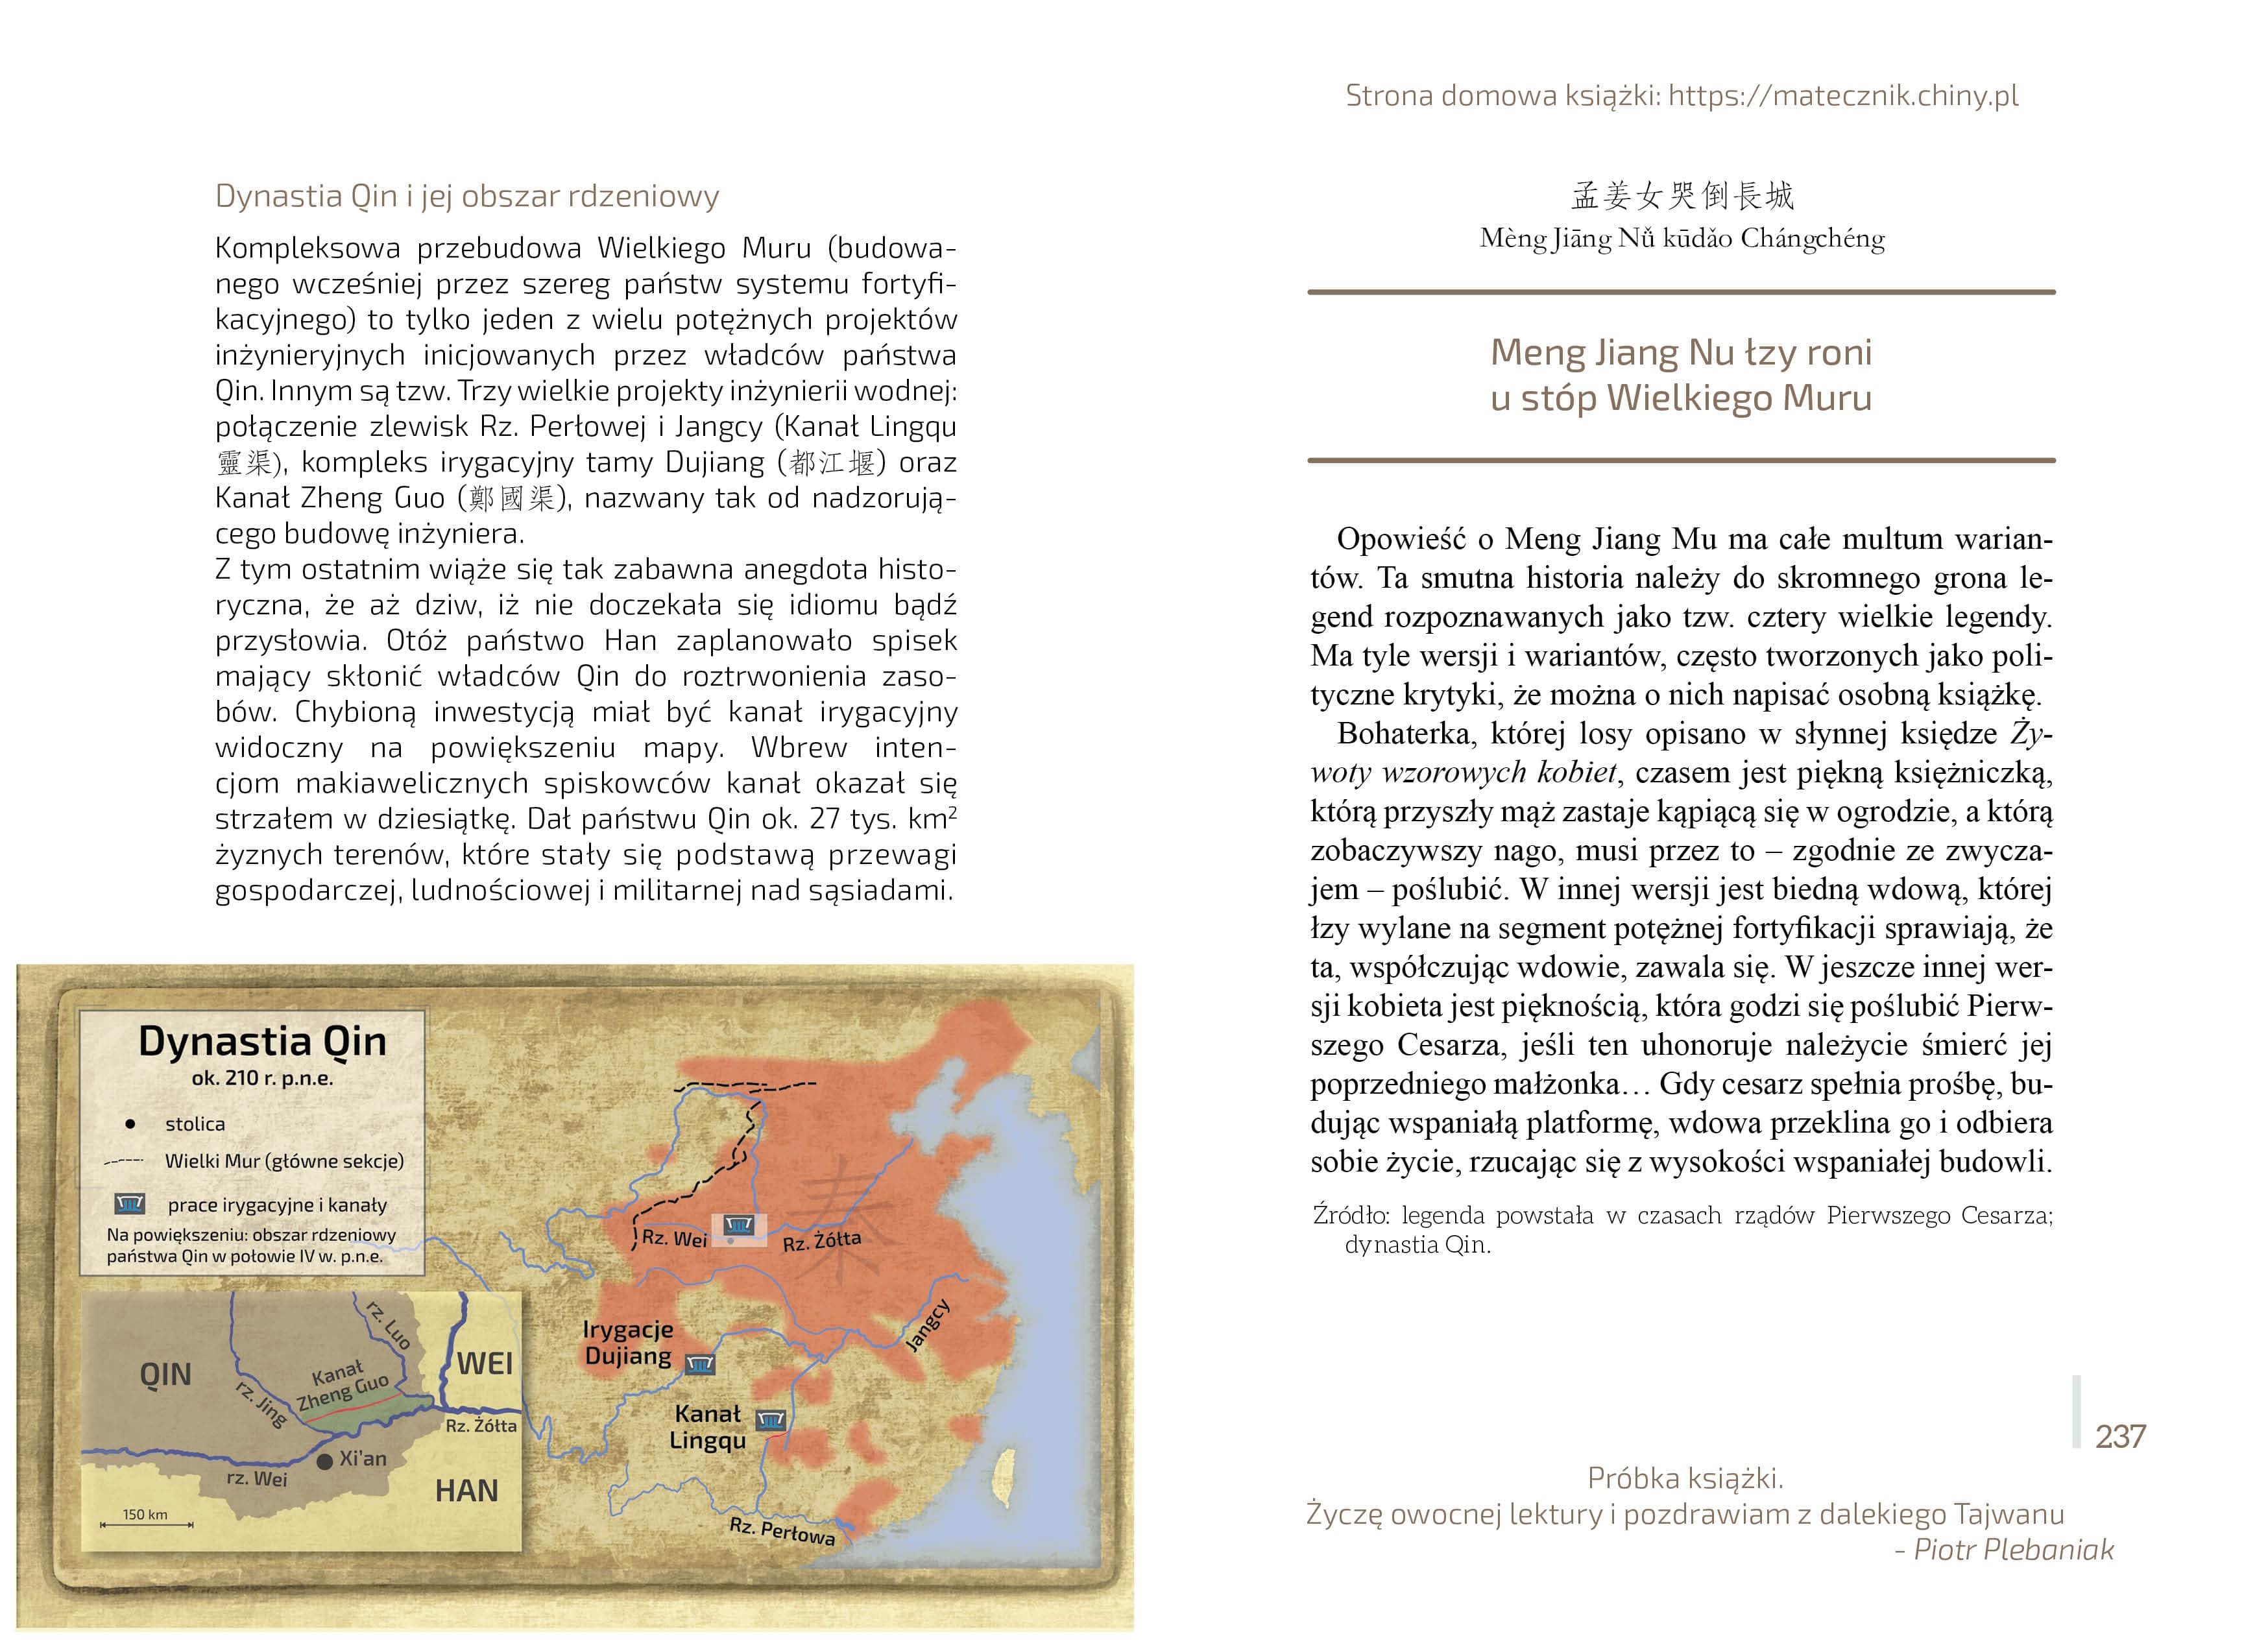 Spojrzenie na Chiny czasów dynastii Qing | Próbka książki 